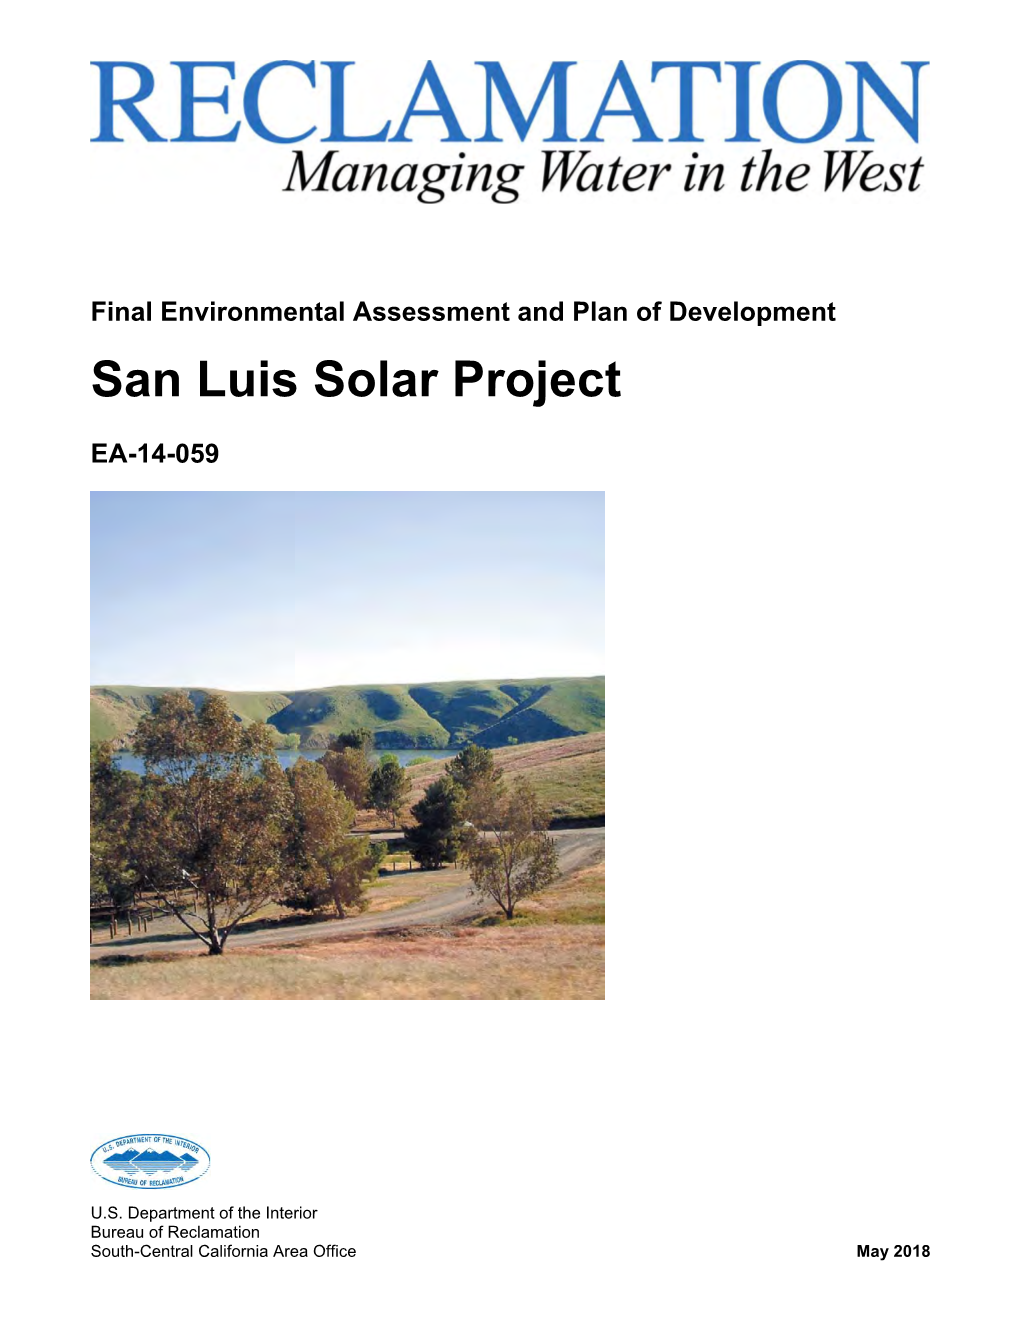 Final EA, San Luis Solar Project